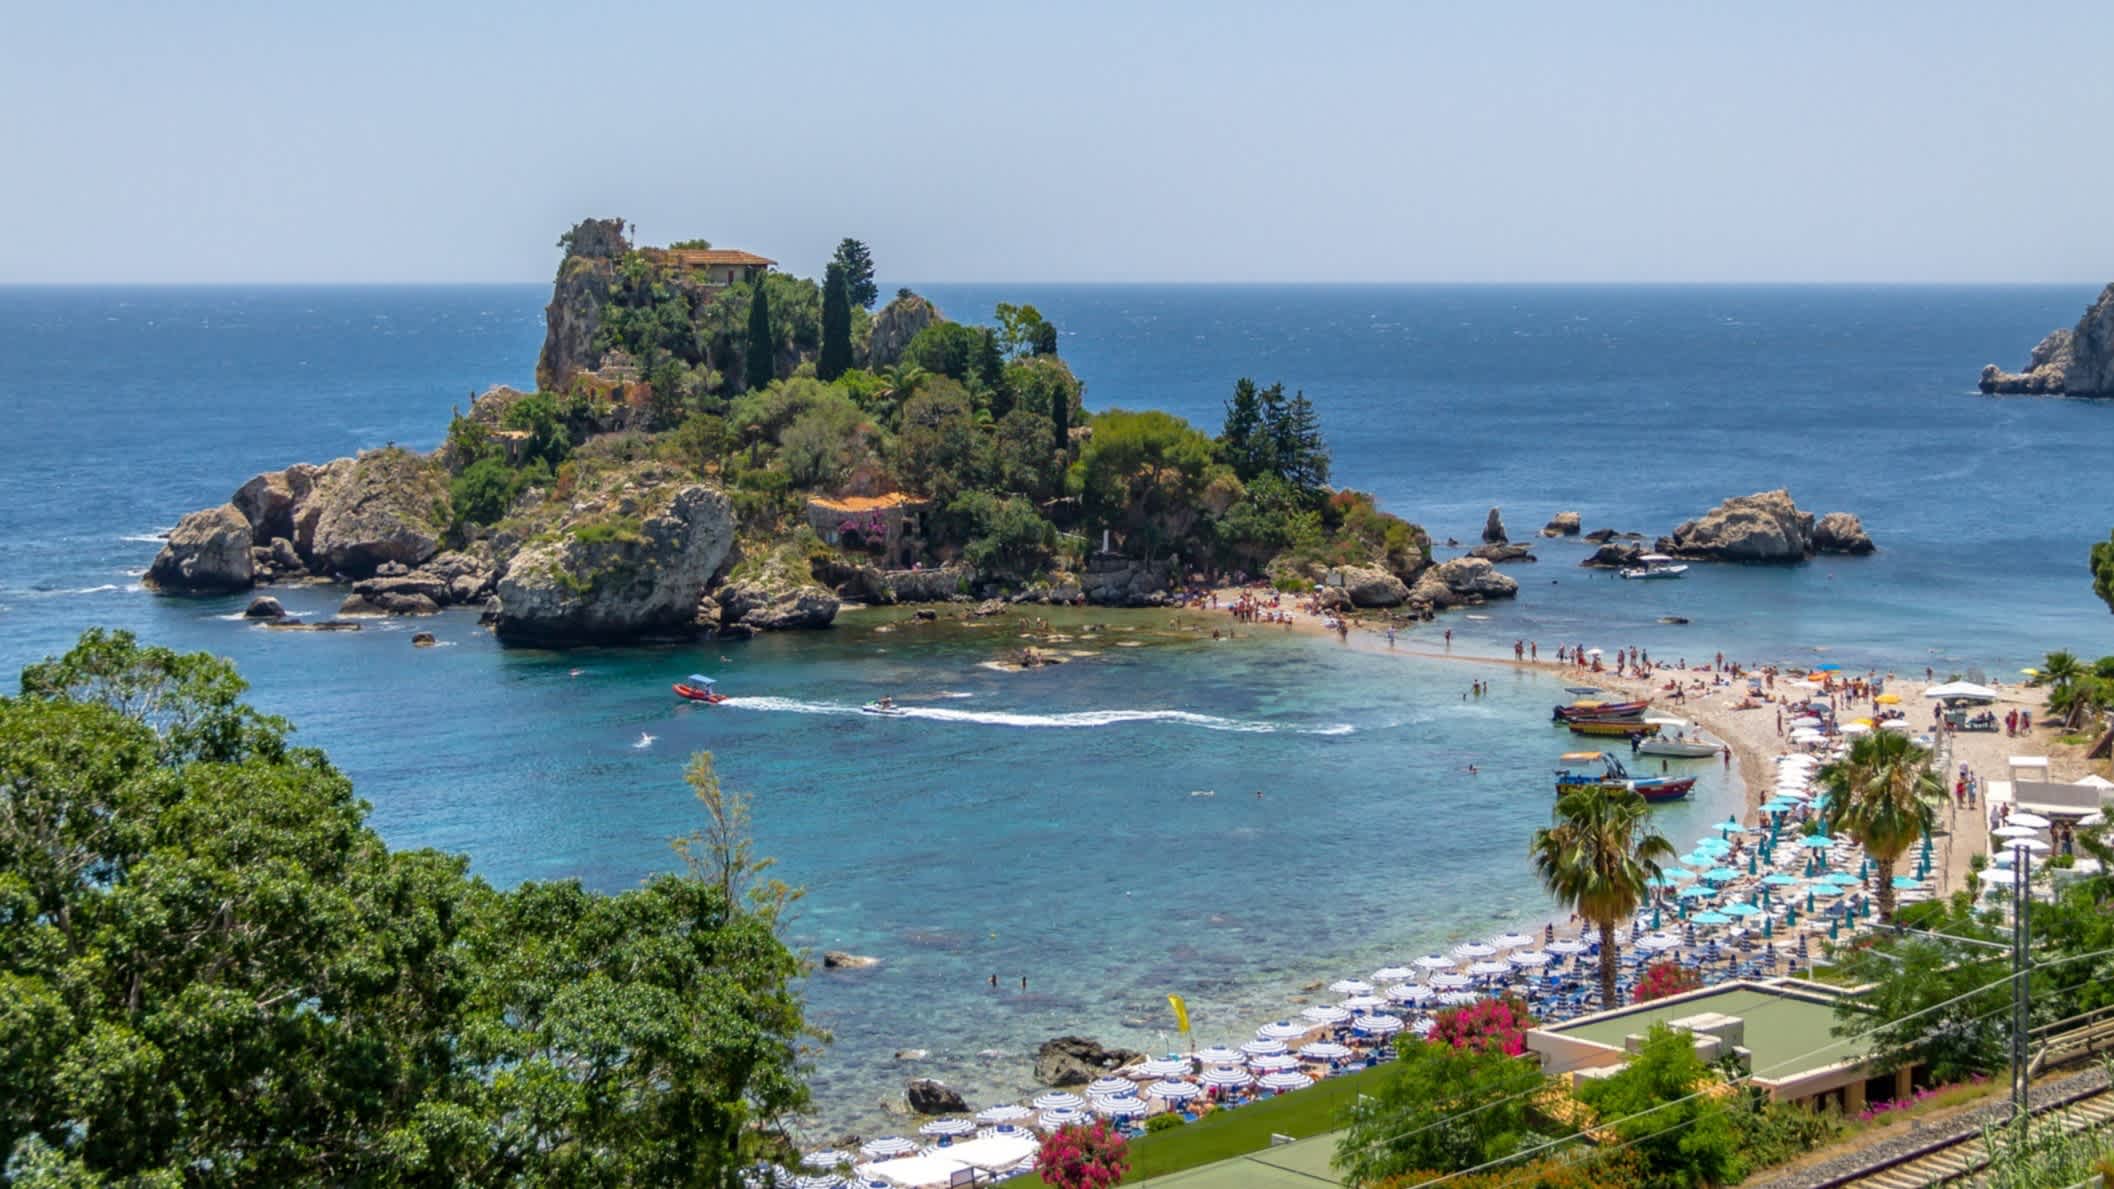 Luftaufnahme der Insel Isola Bella und Strand, Taormina, Sizilien, Italien mit einer vorgelagert en Insel.
